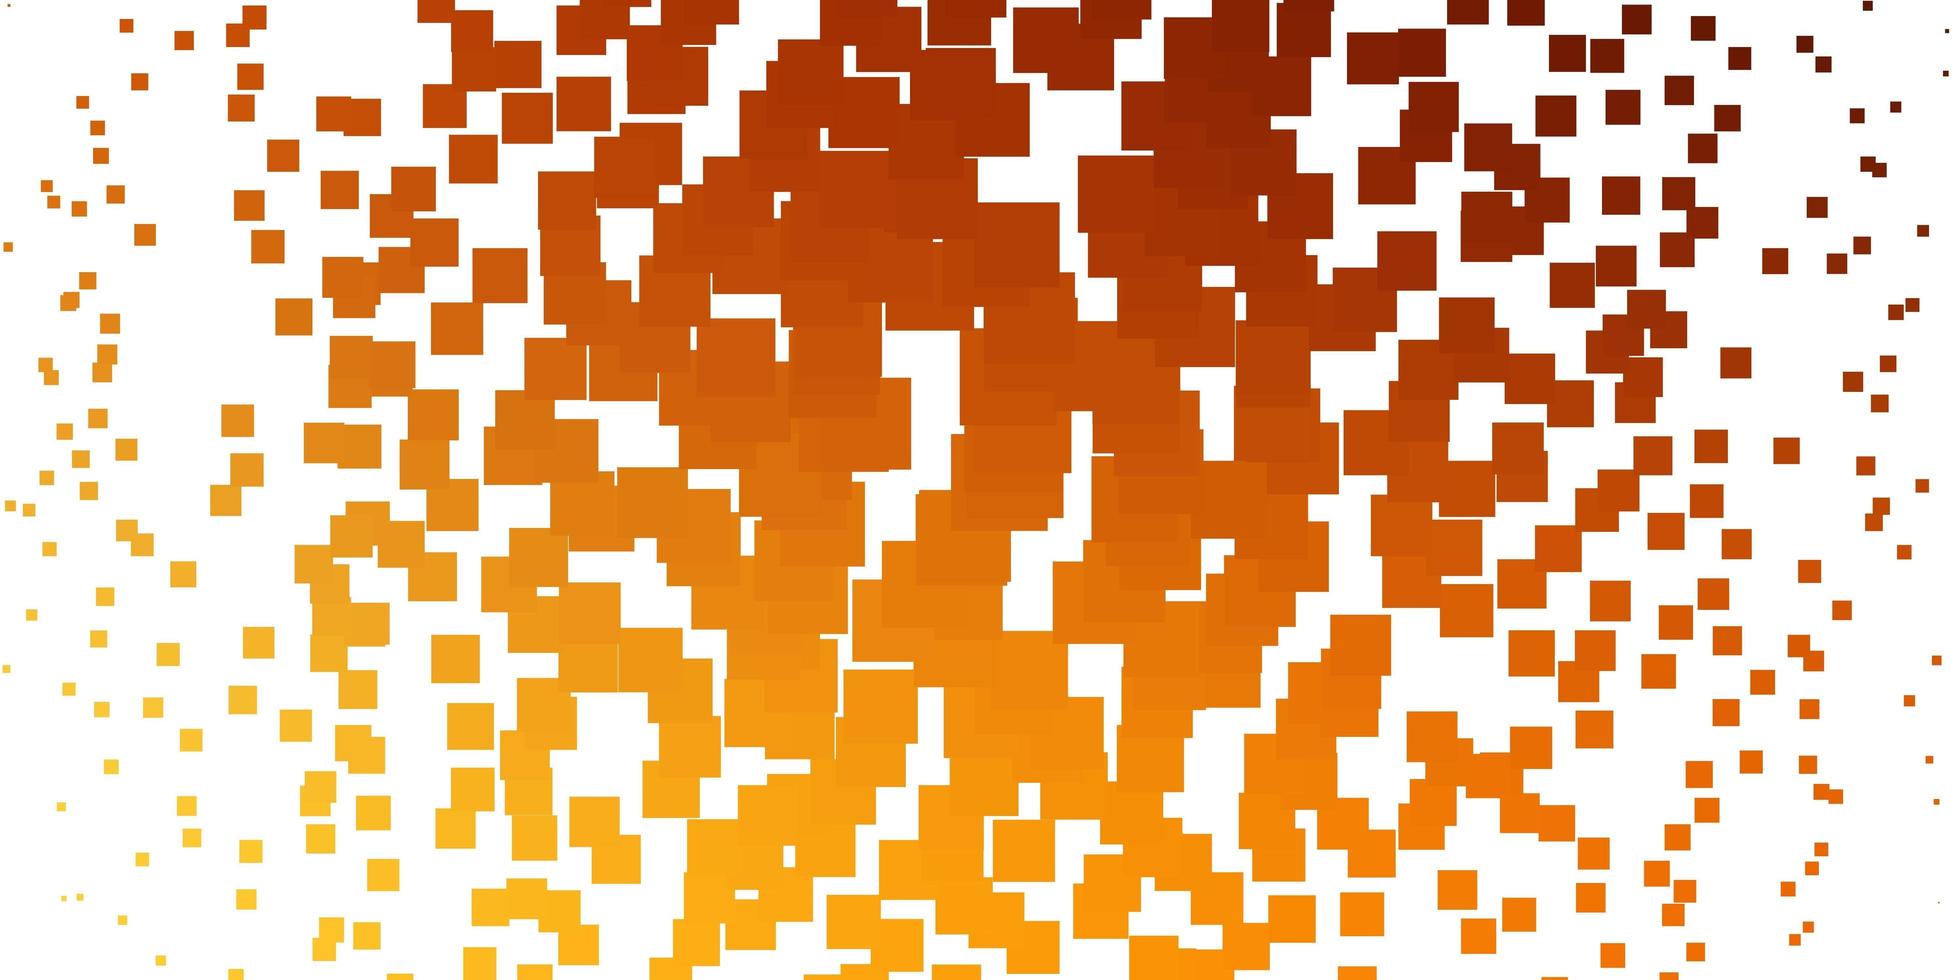 textura de vector naranja claro en estilo rectangular.